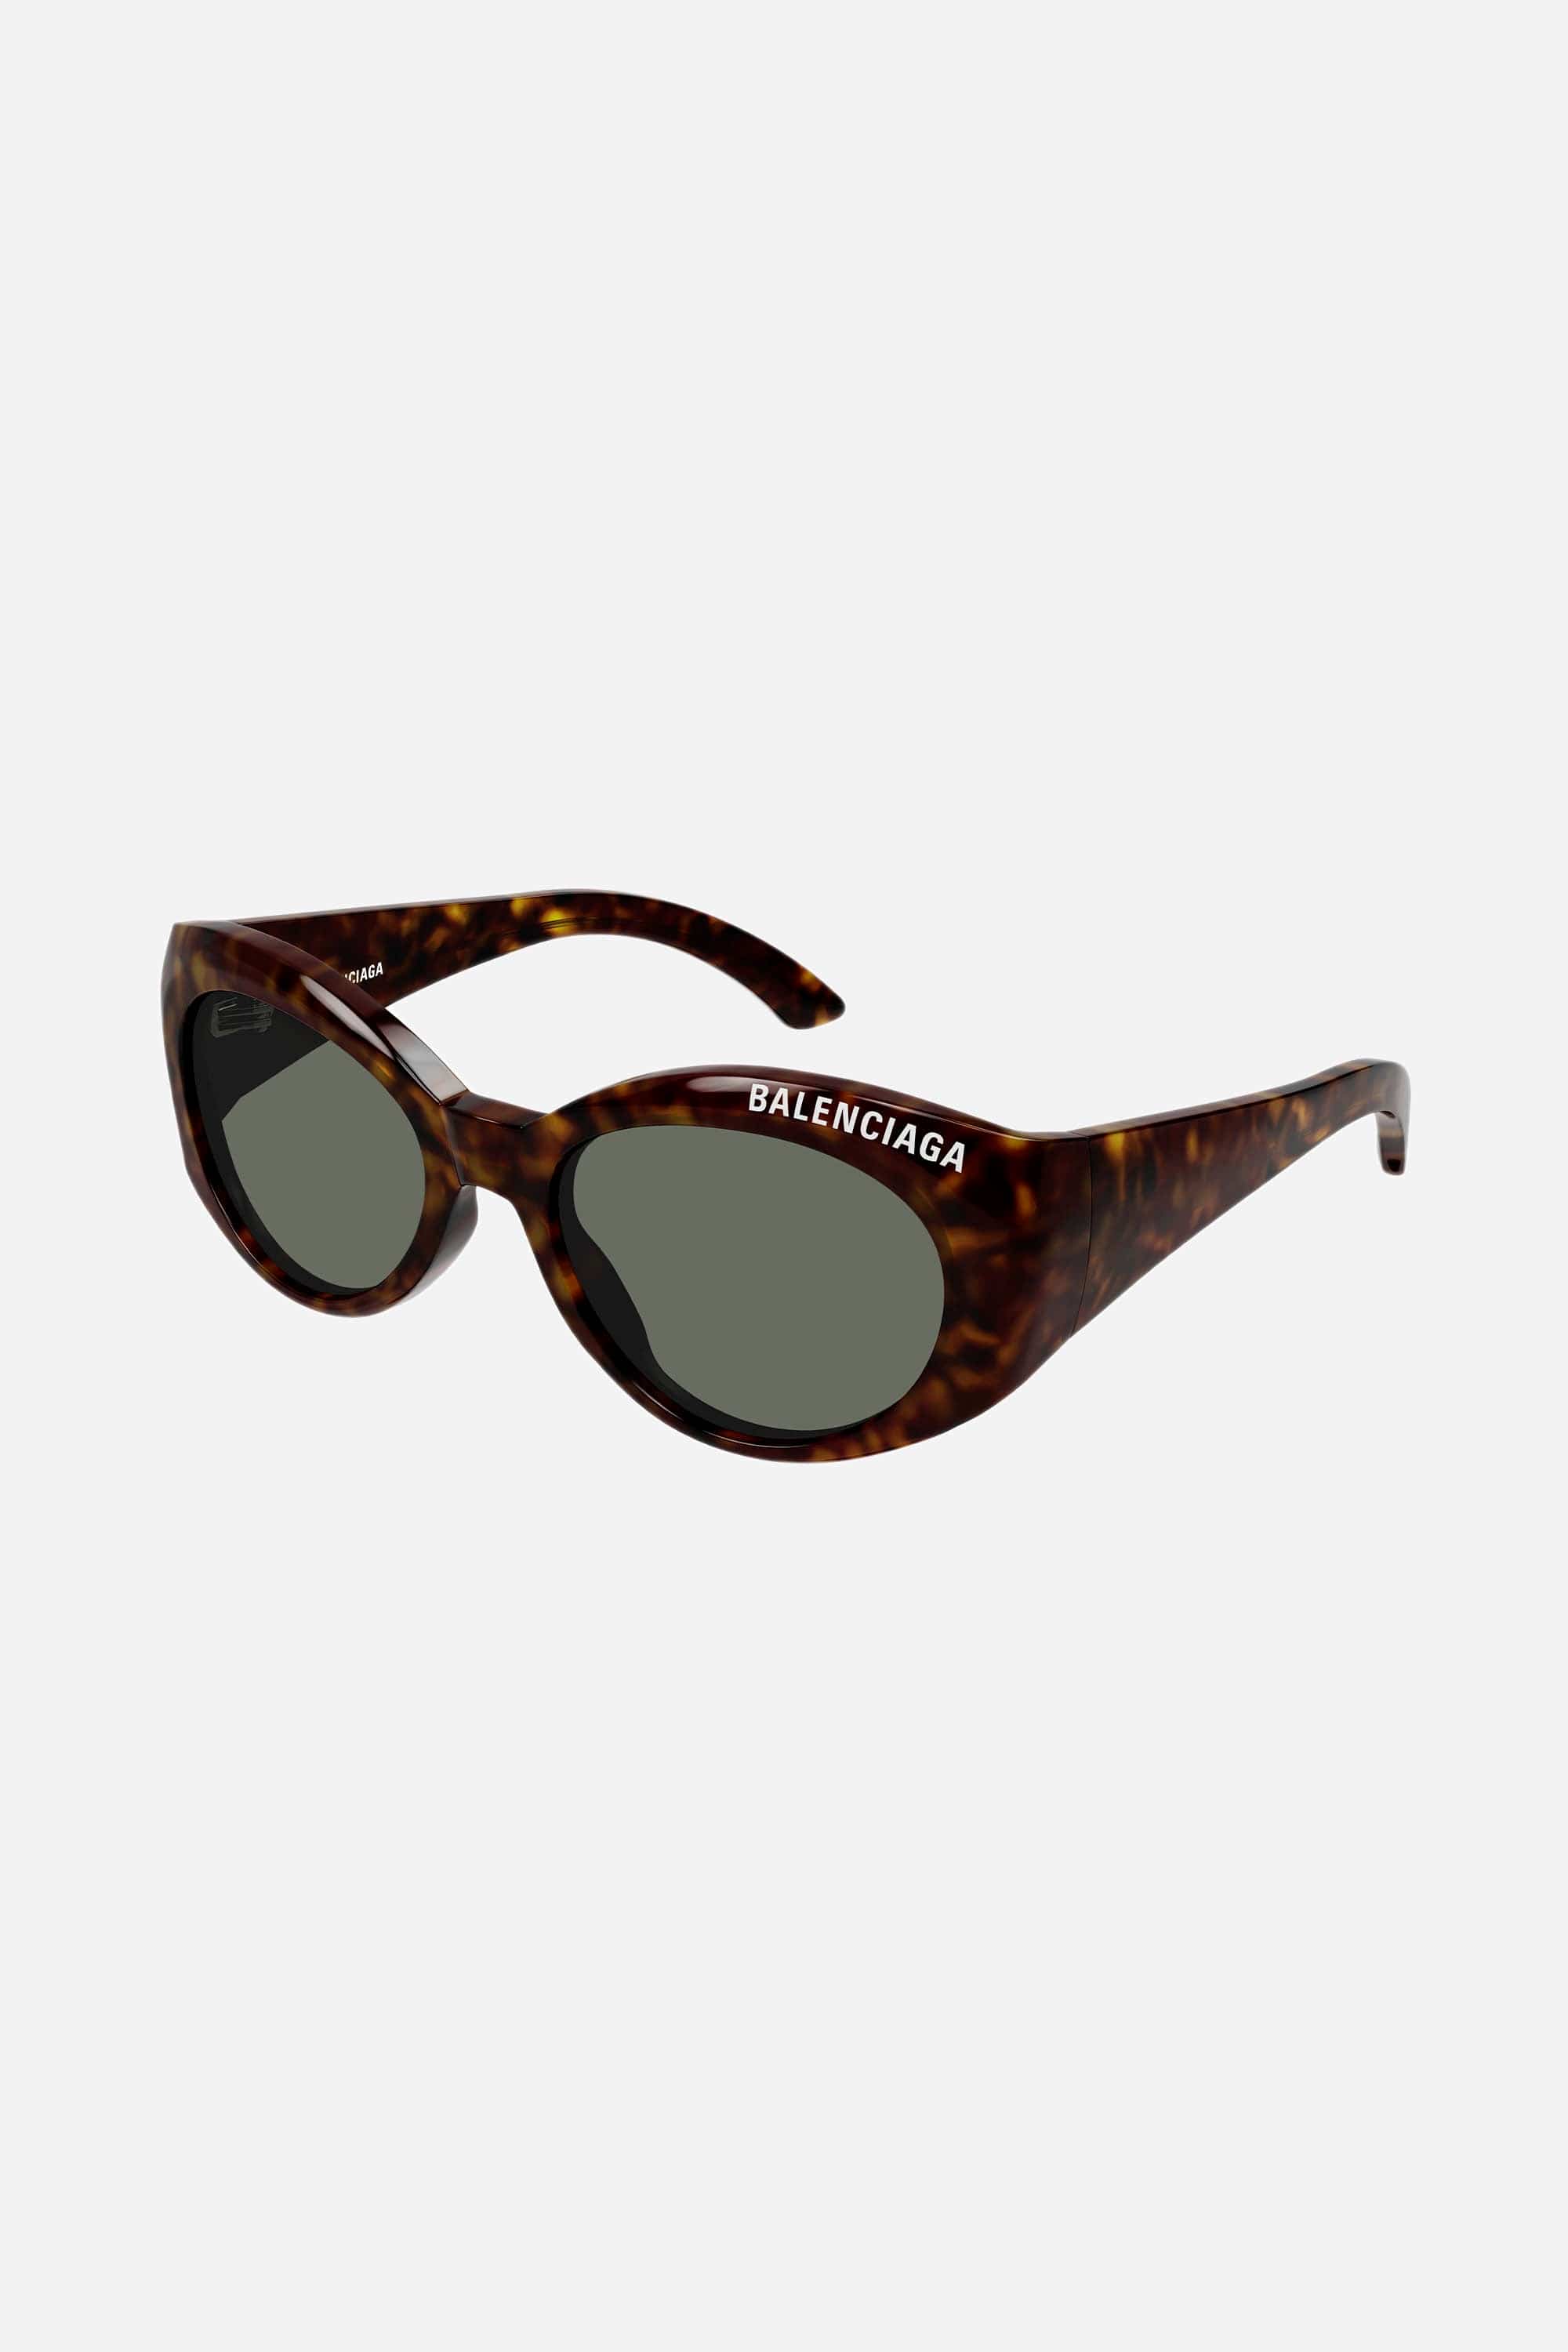 Balenciaga havana oval sunglasses - Eyewear Club